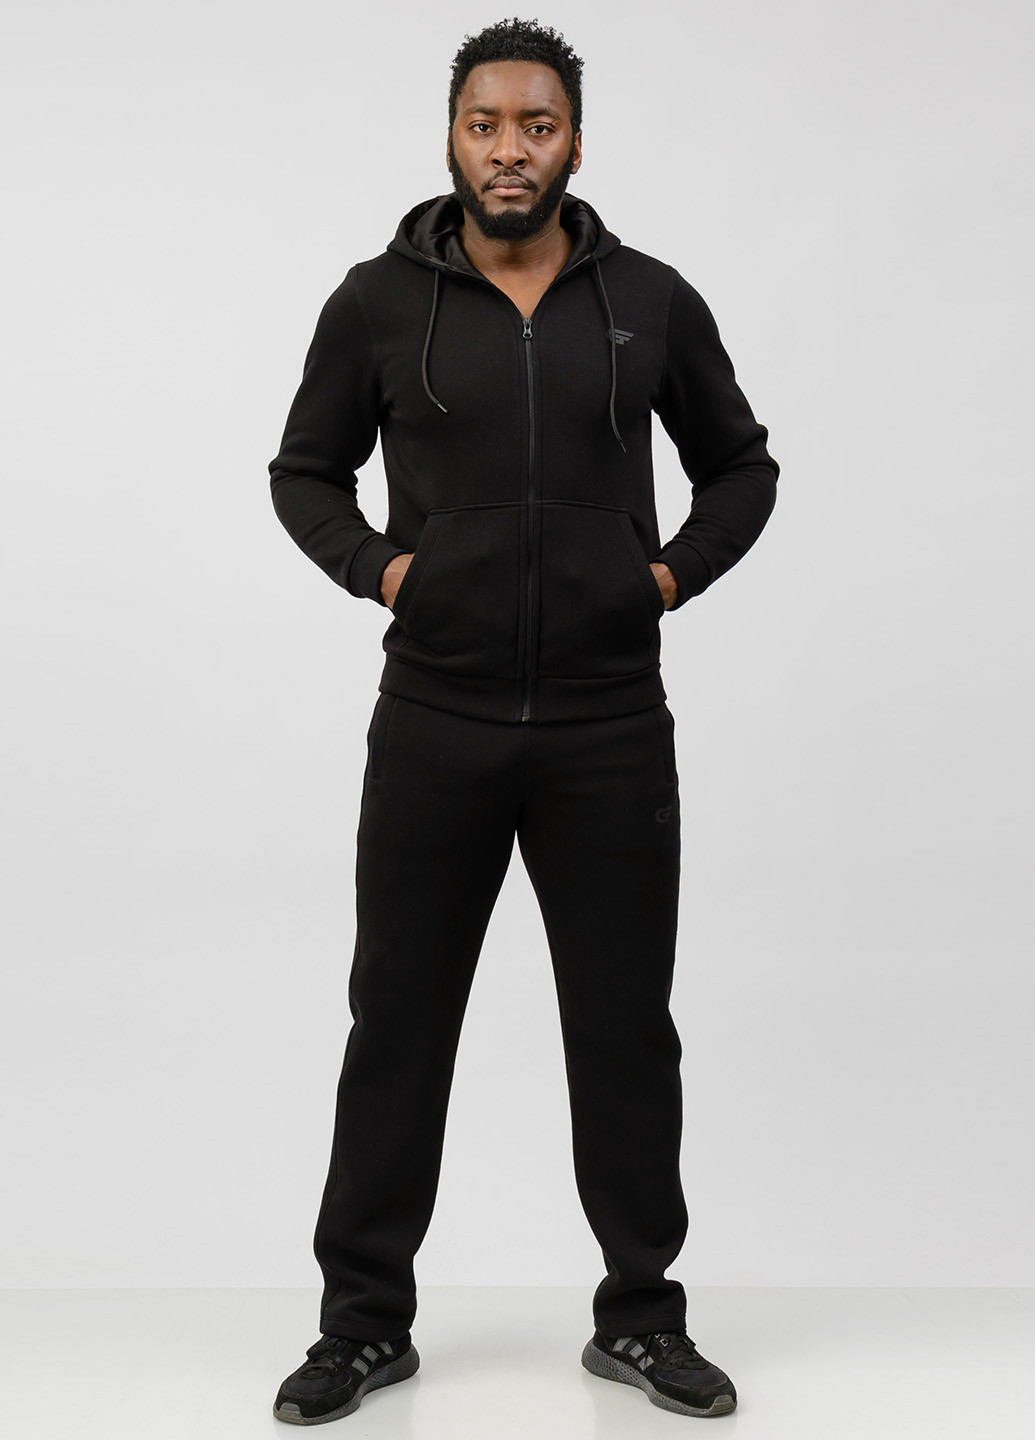 Чорний демісезонний костюм (толстовка, штани) брючний GF SPORT